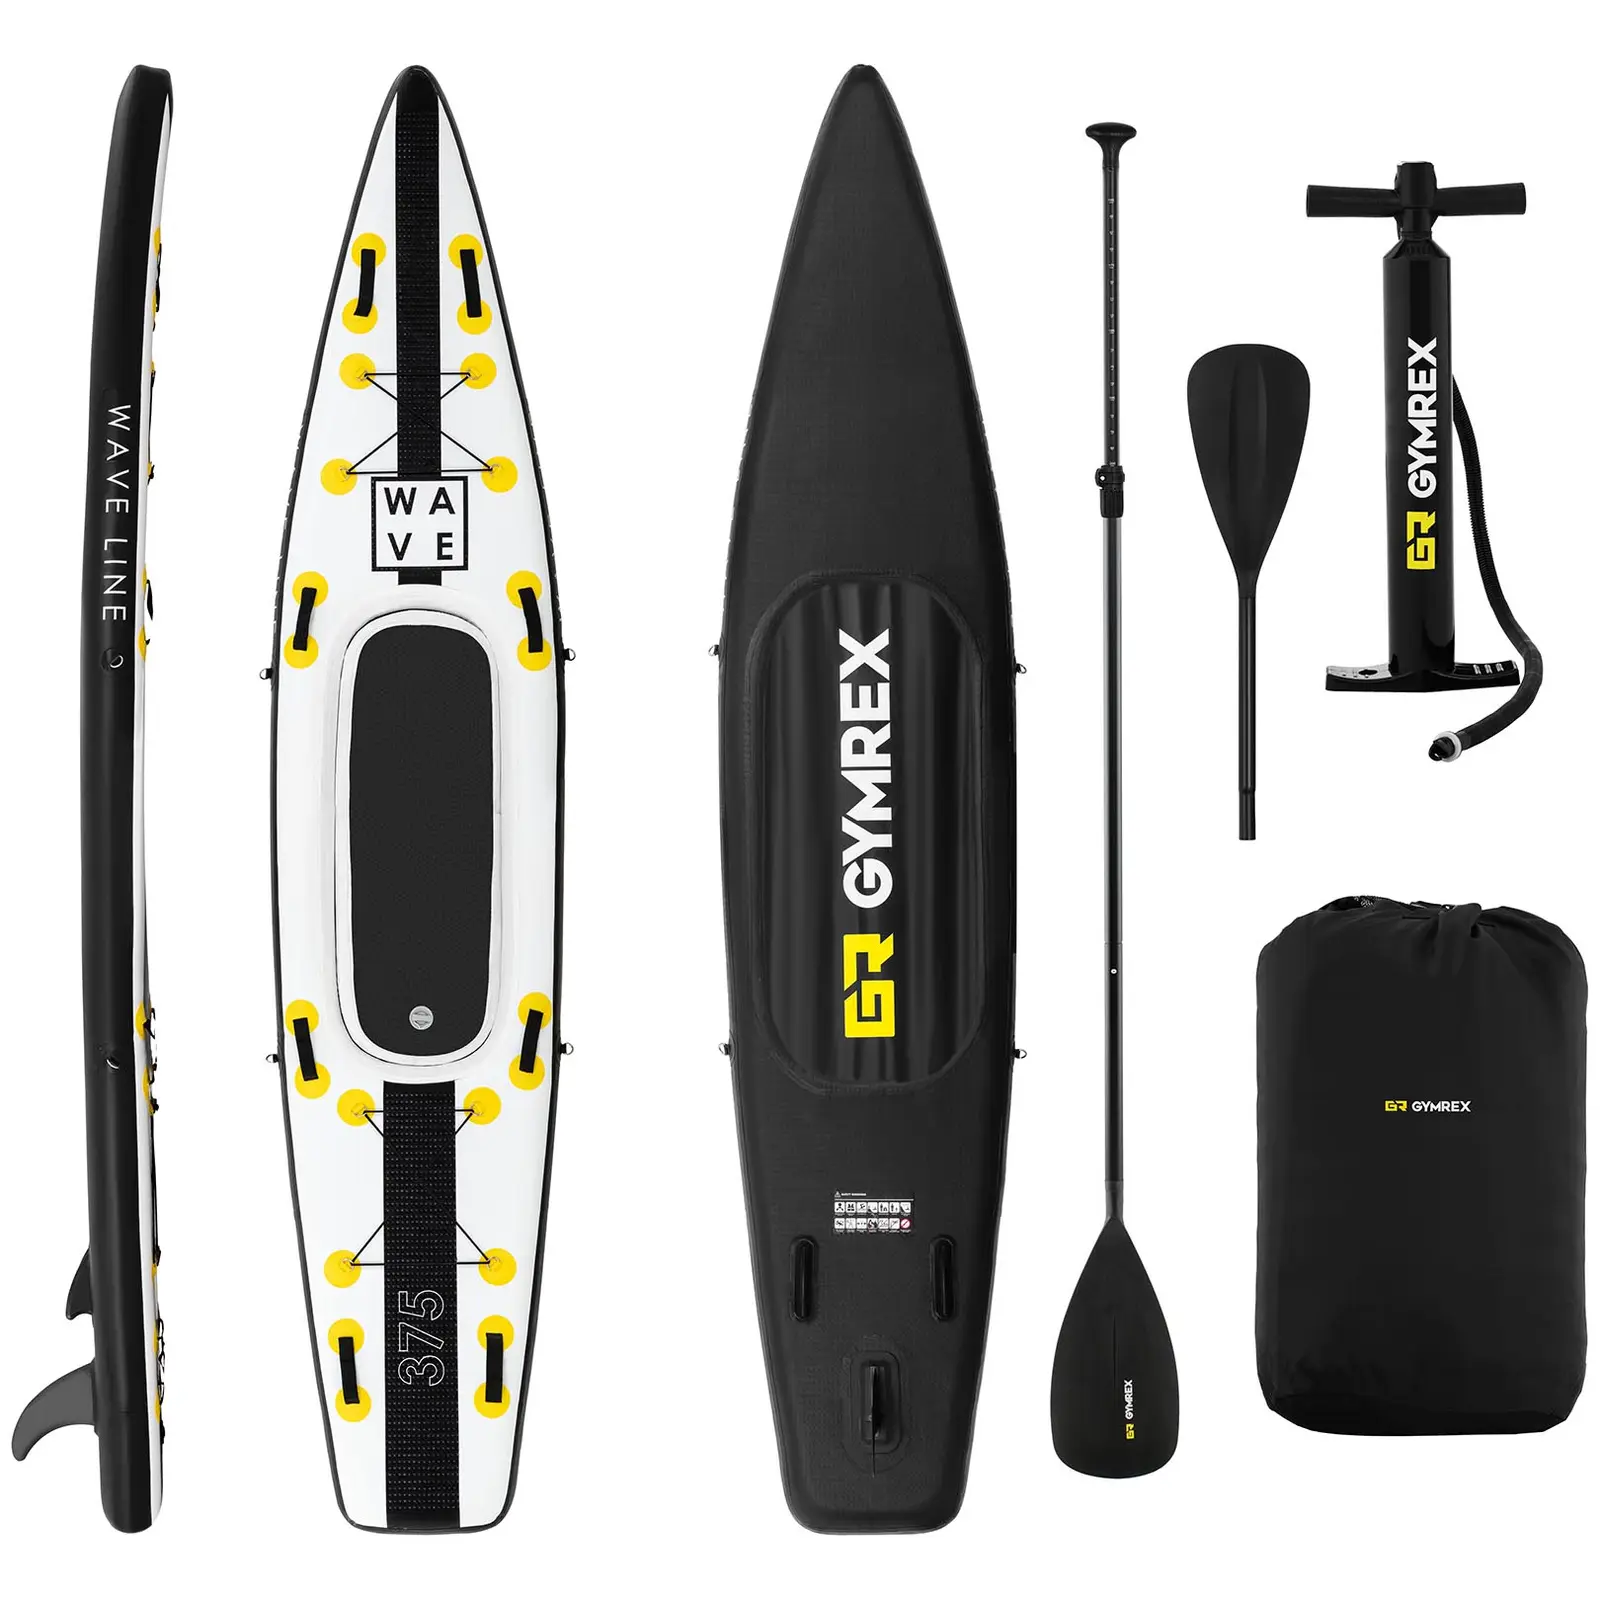 Paddle-board - 120 kg - sort/gul - sæt inkl. paddel, sæde og tilbehør